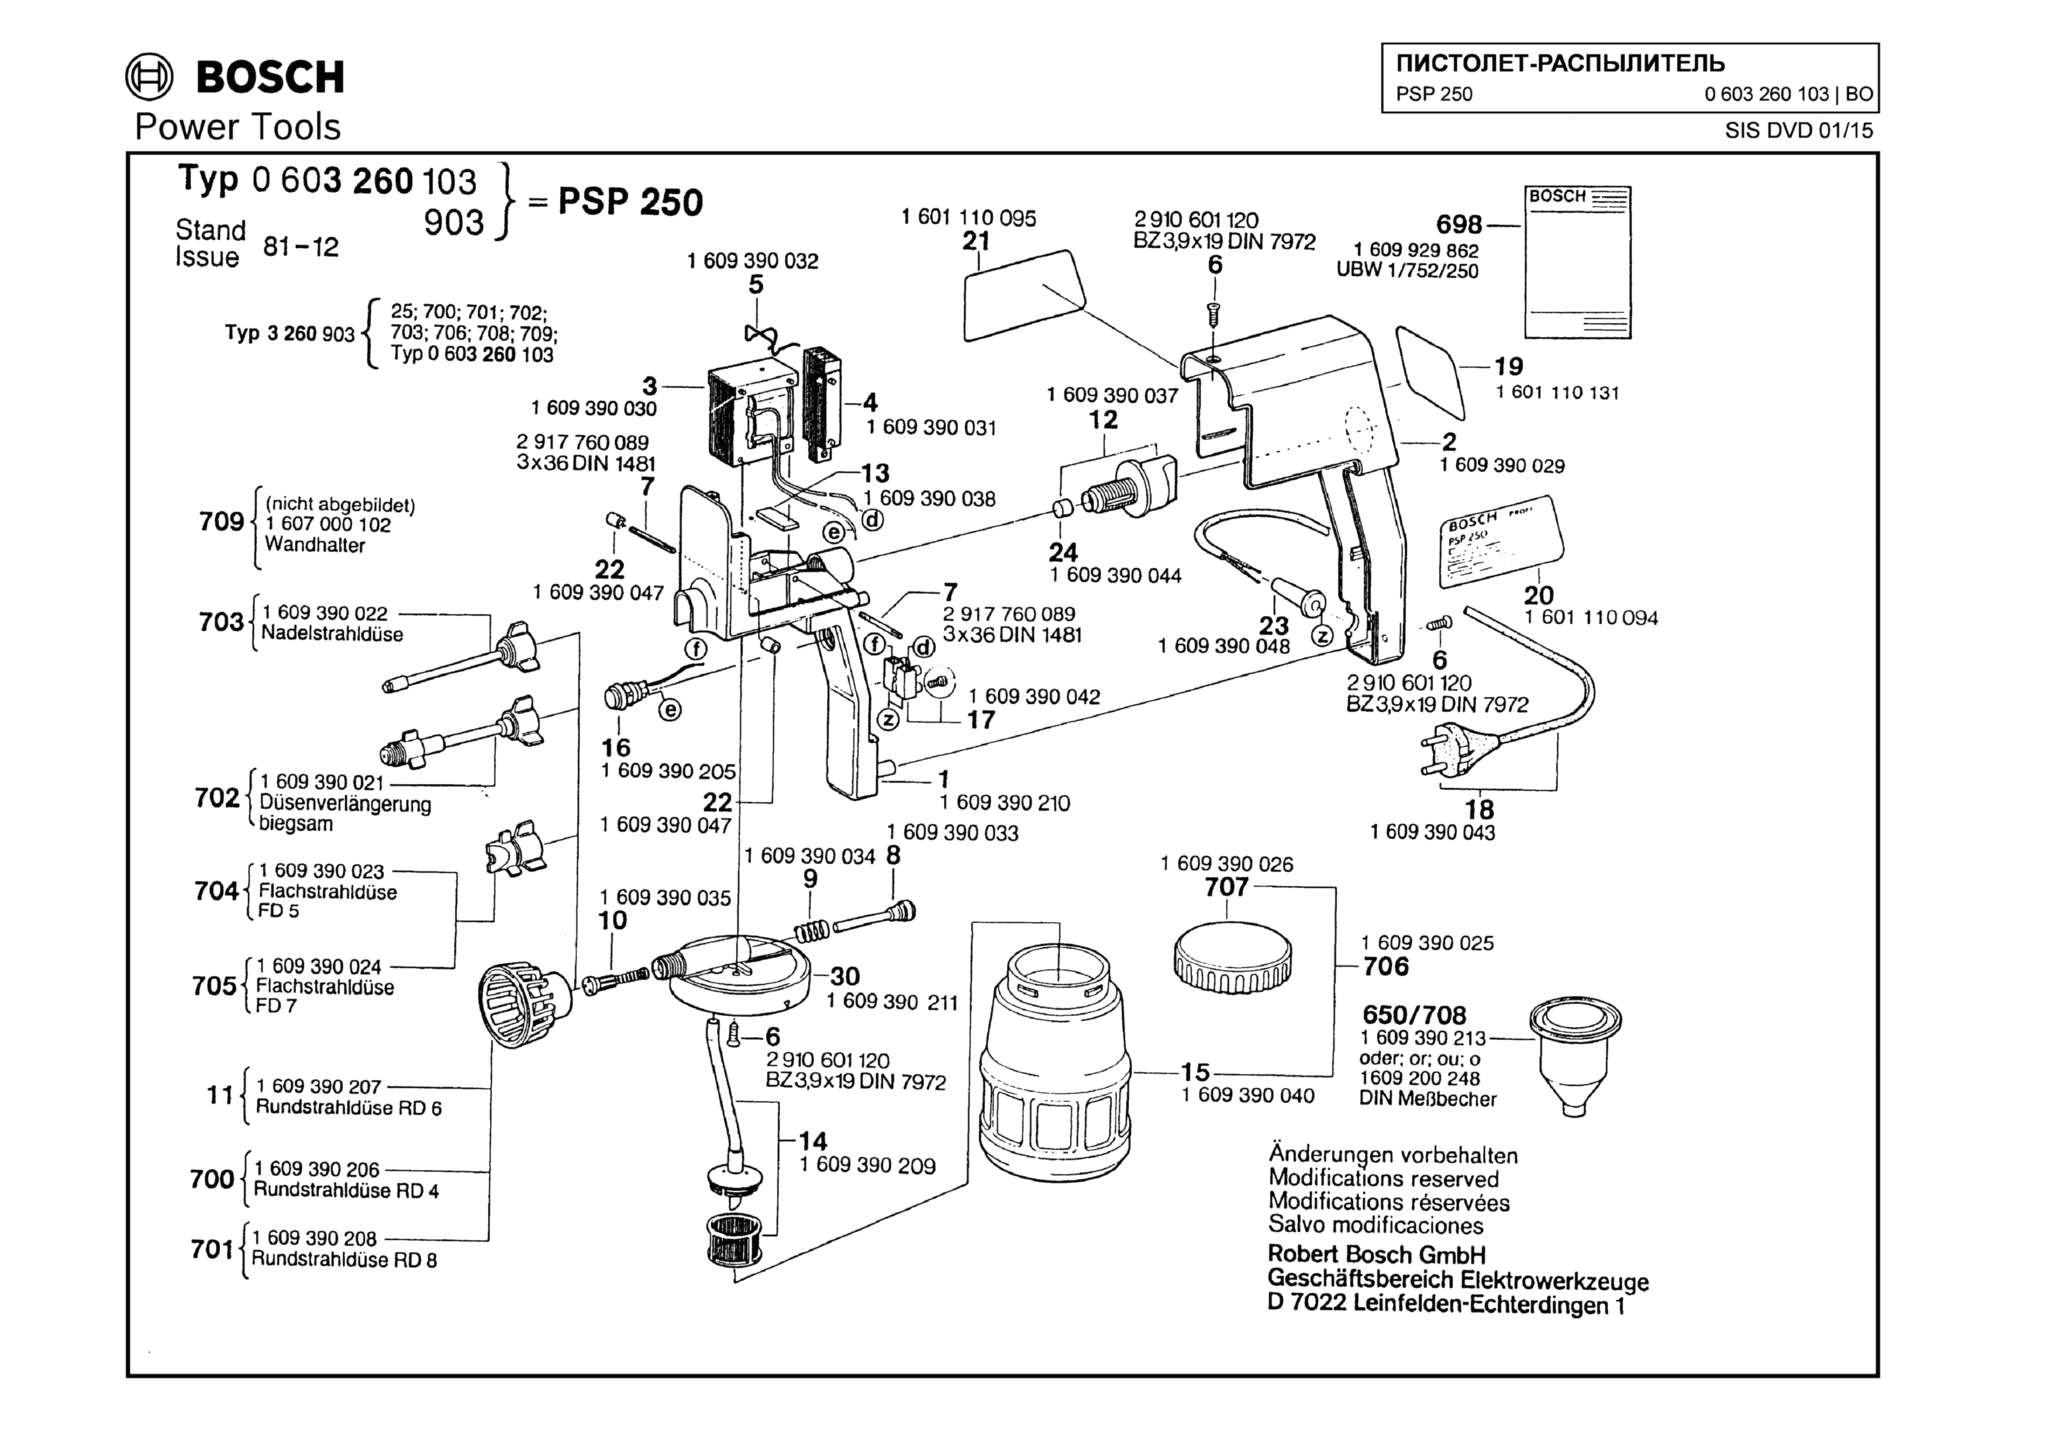 Запчасти, схема и деталировка Bosch PSP 250 (ТИП 0603260103)